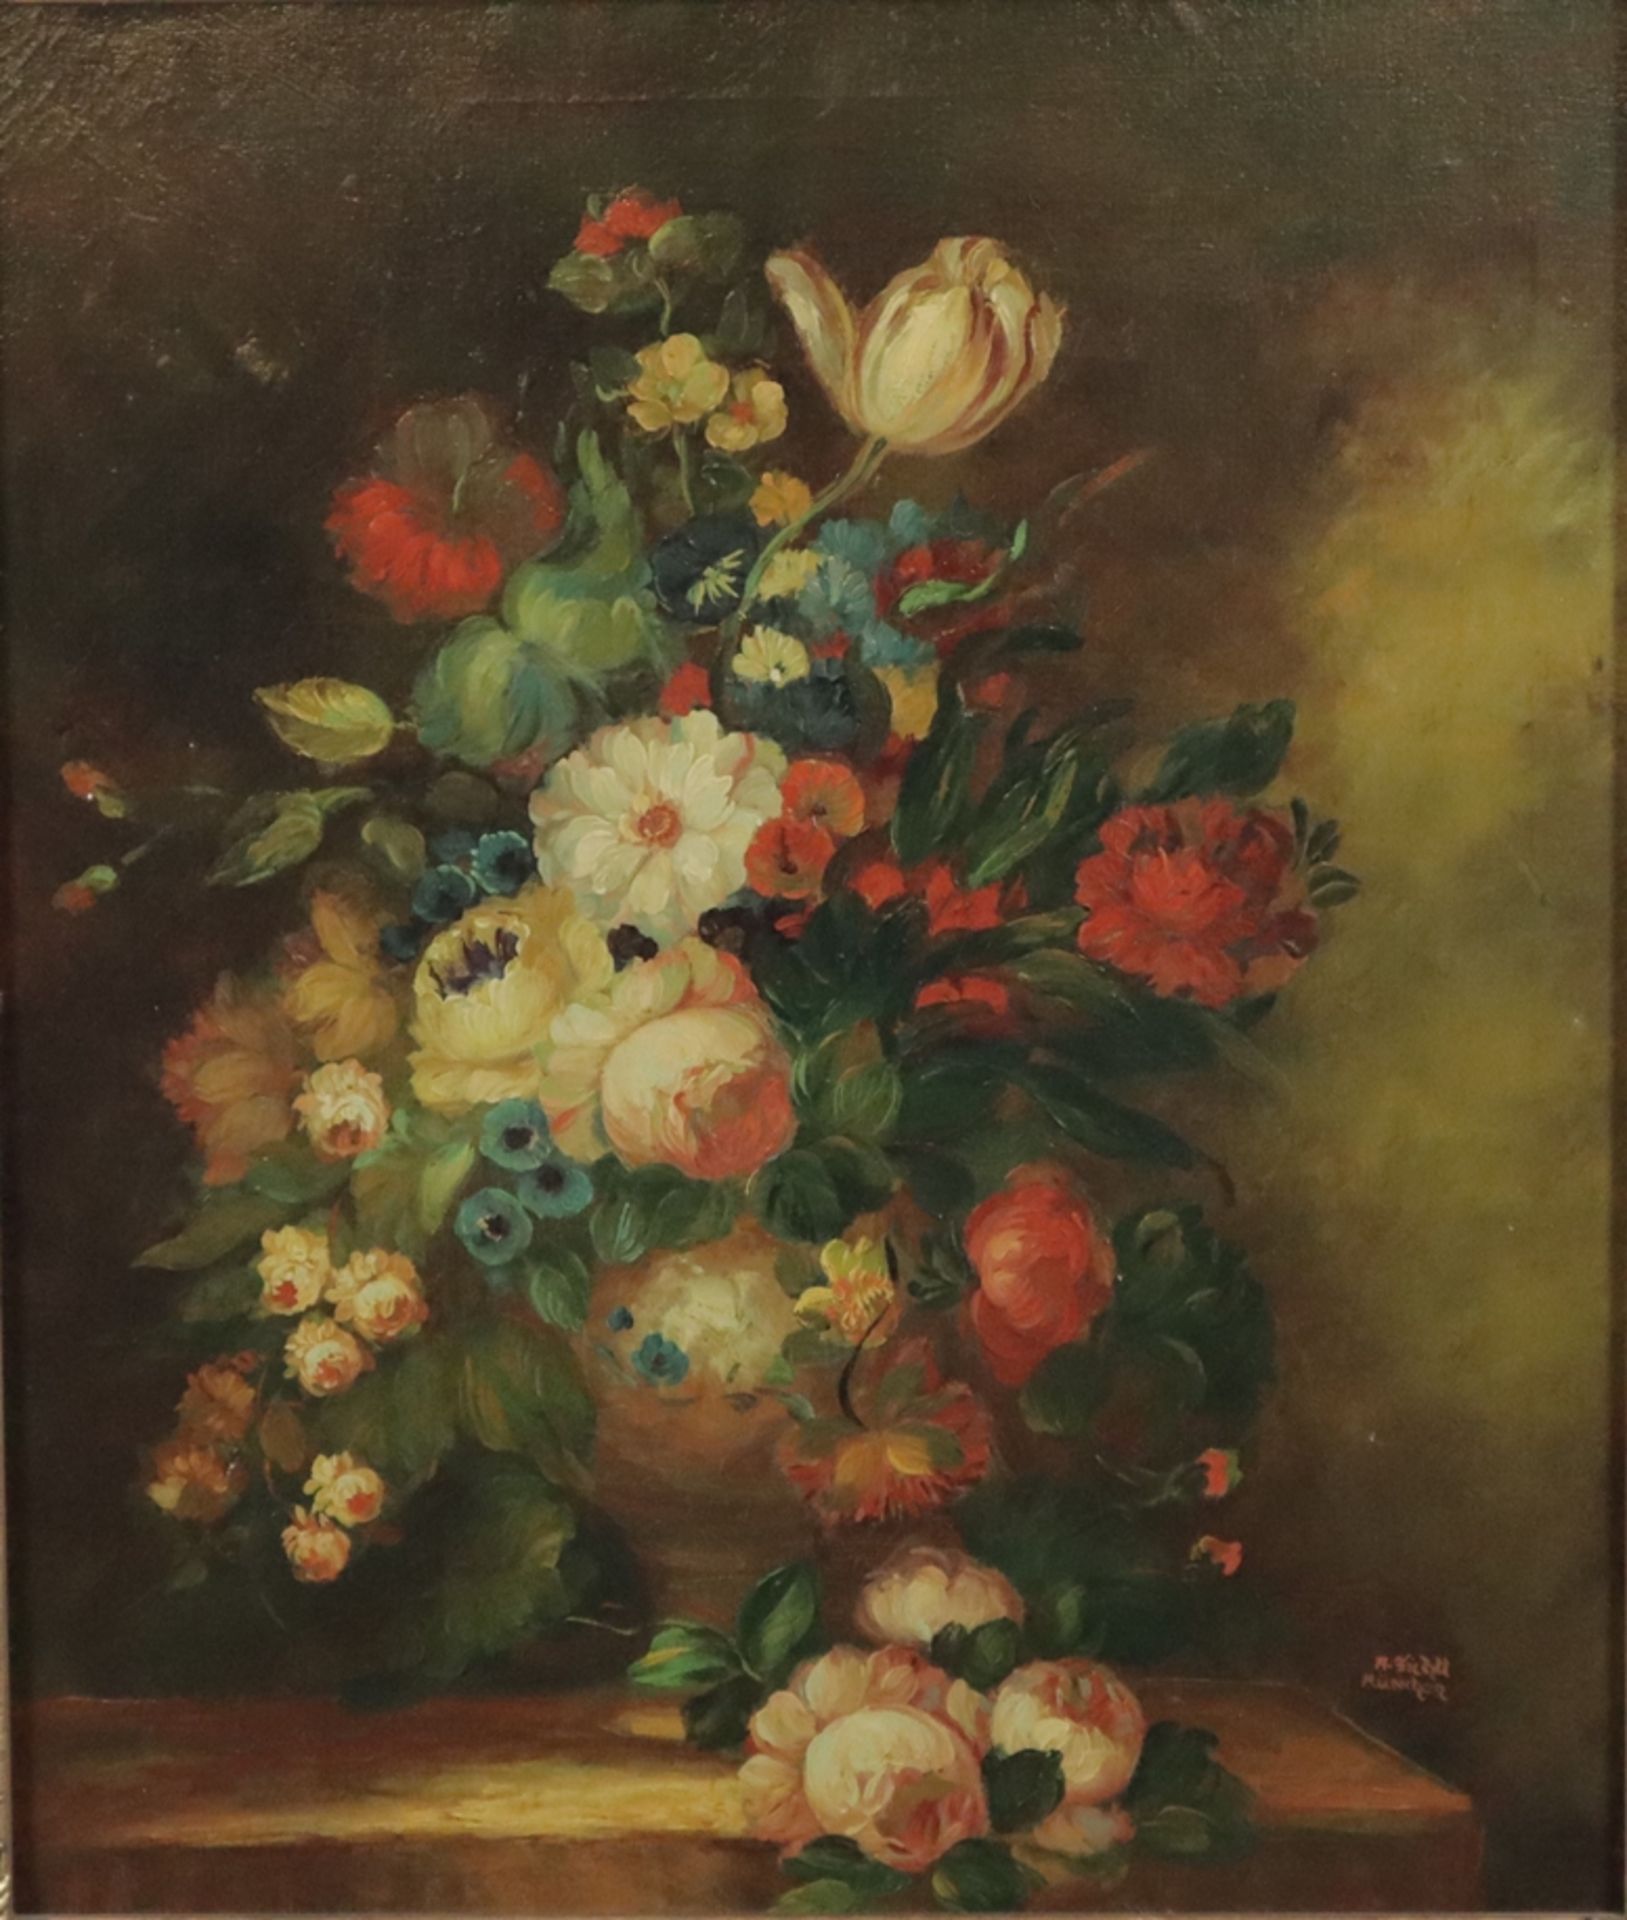 Fichtl, Anton (geb.1908 München) - Barockes Blumenstilleben in der Art von Rachel Ruysch, Öl auf